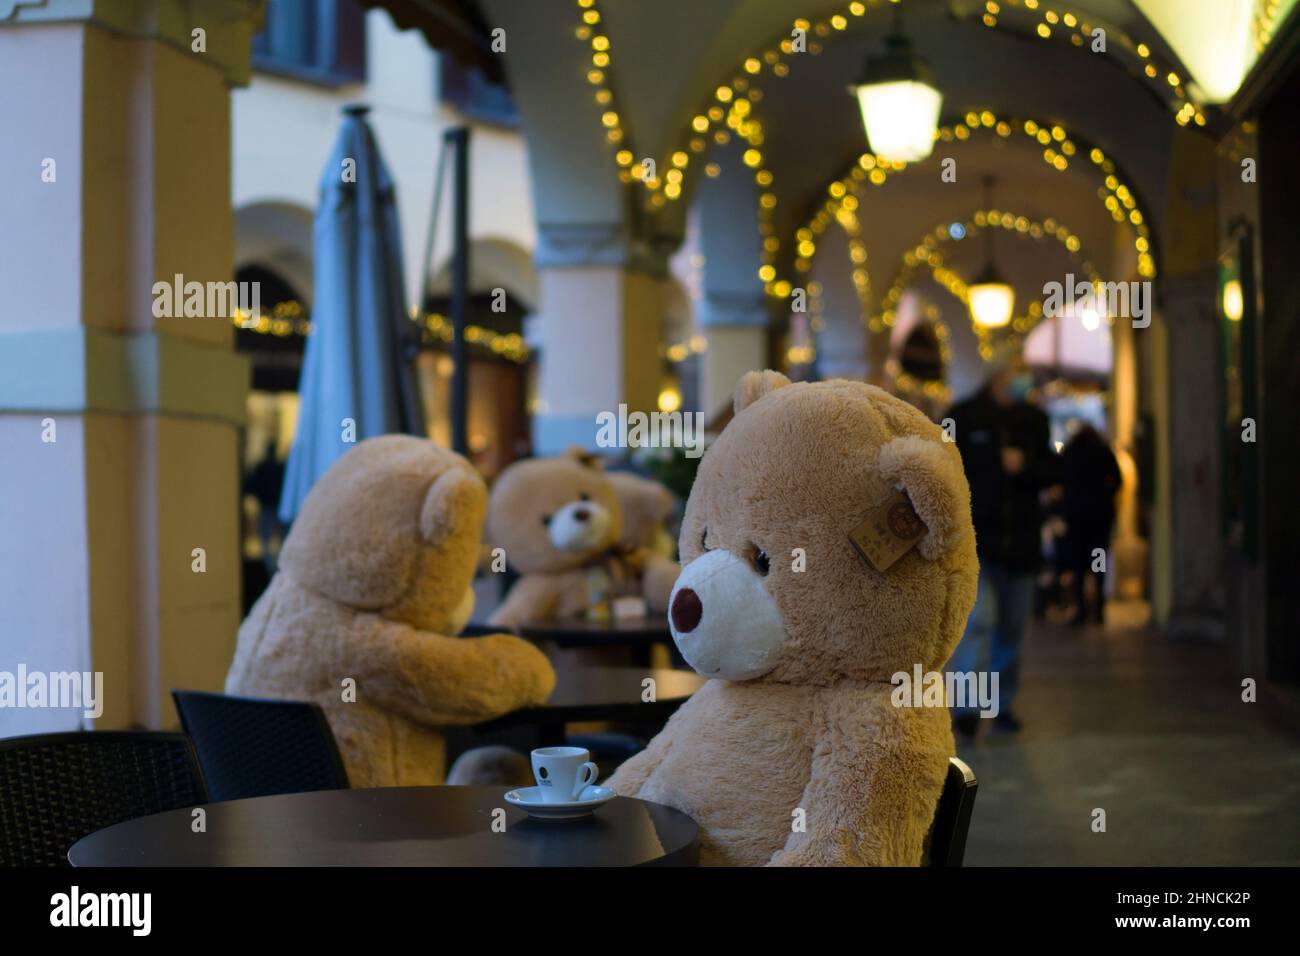 Italy, Lombardy, Abbiategrasso, teddy bears at cafe Stock Photo